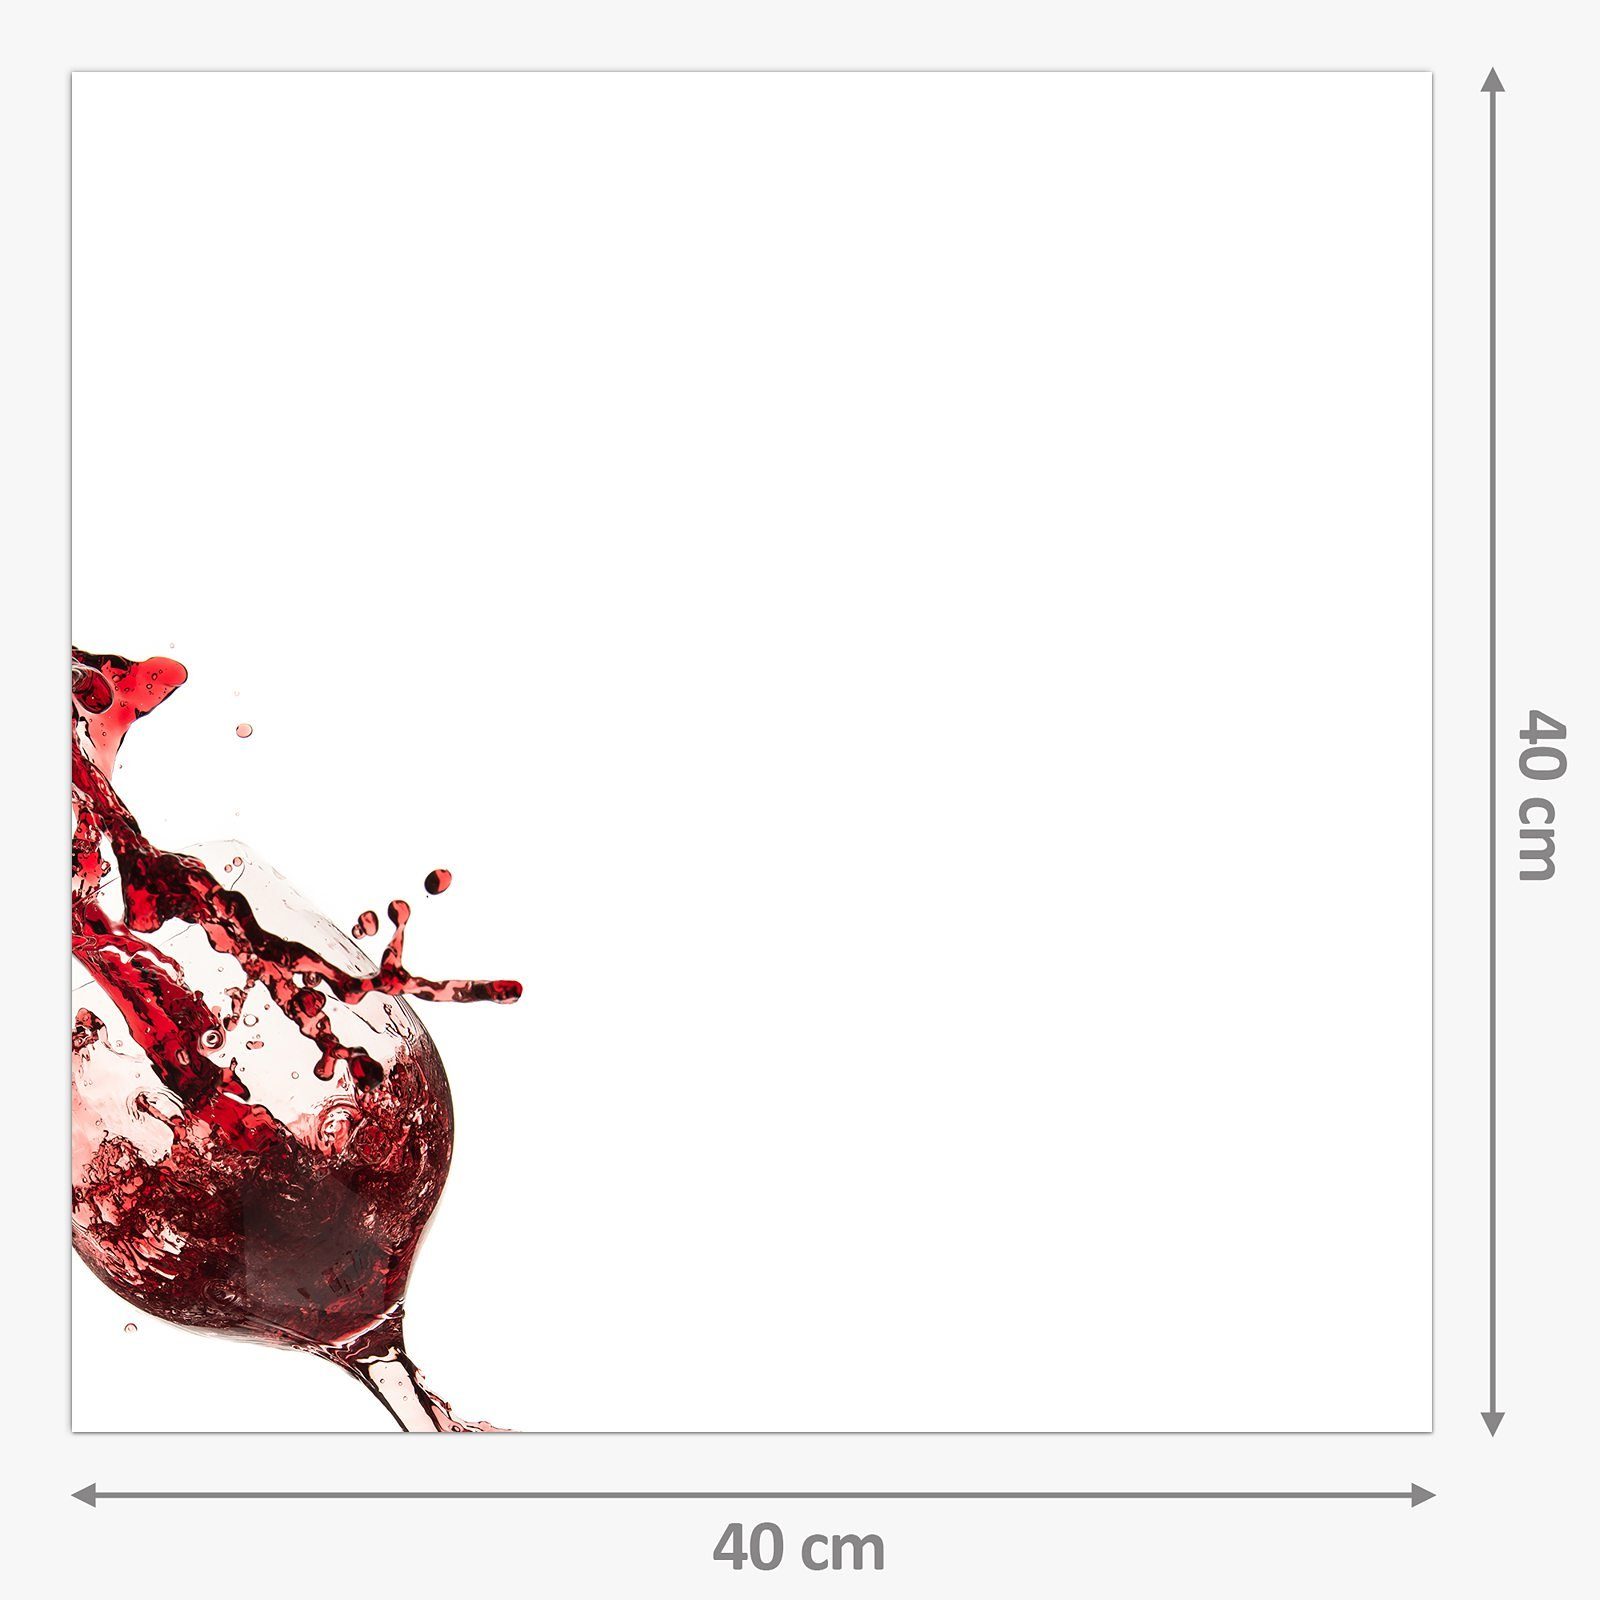 ins Glas Küchenrückwand Glas Primedeco Spritzschutz Motiv Küchenrückwand Rotwein mit